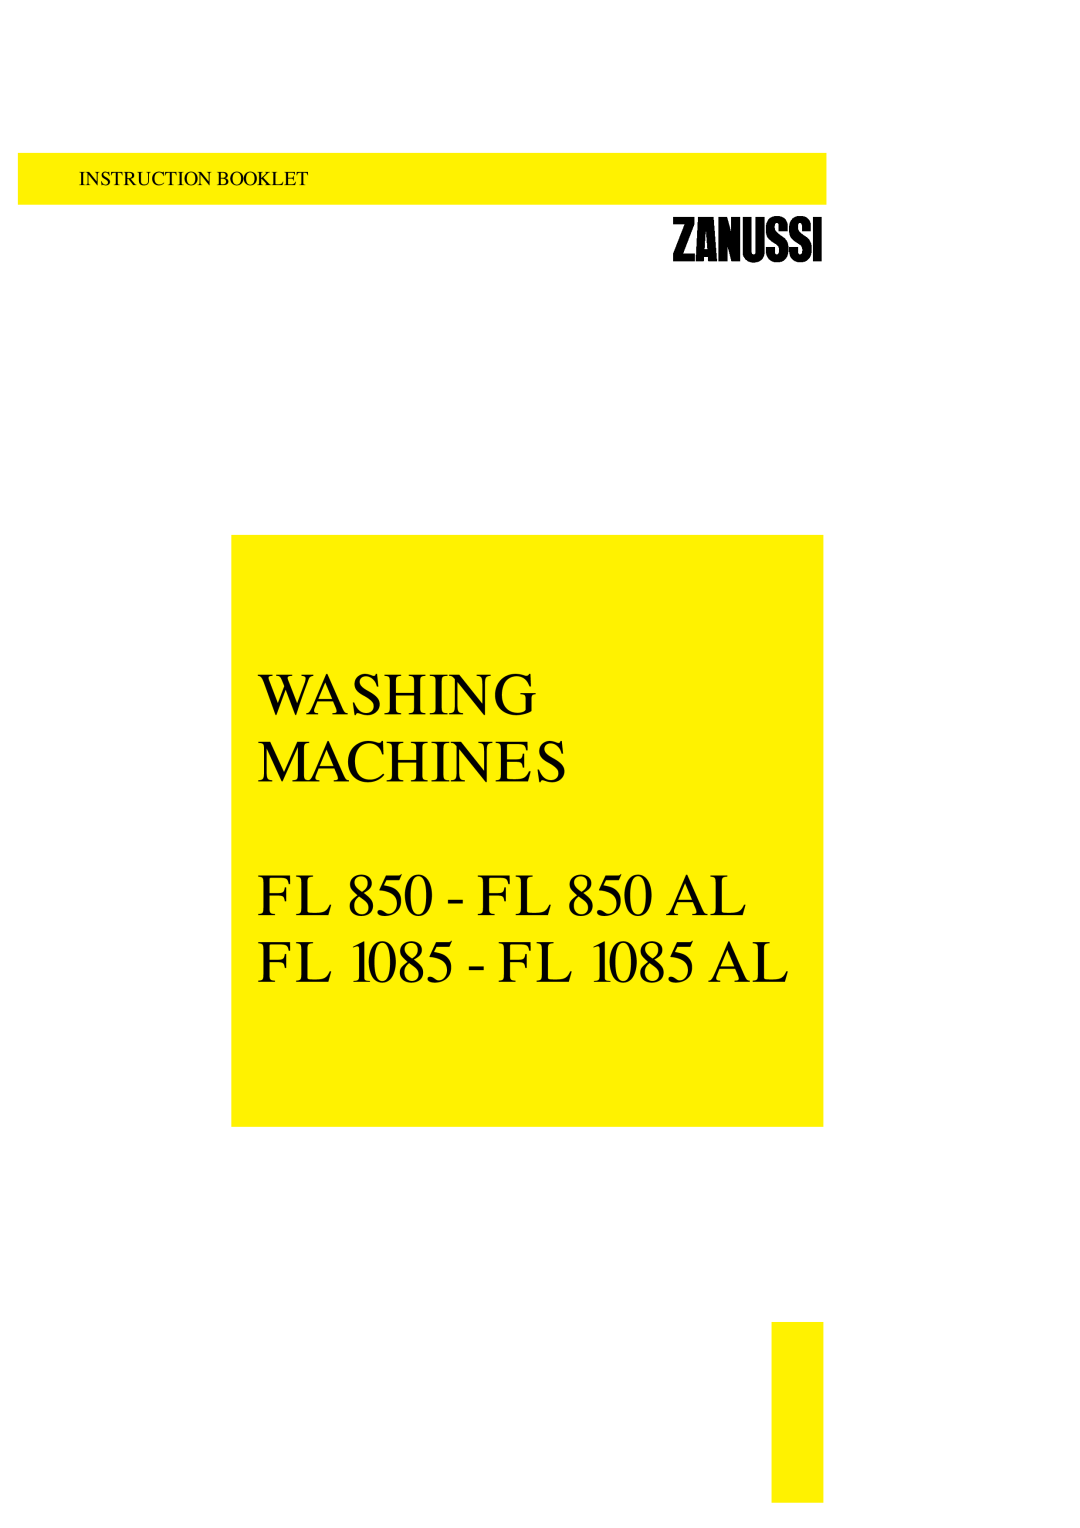 Zanussi manual Washing Machines, FL 850 - FL 850 AL FL 1085 - FL 1085 AL, Instruction Booklet 